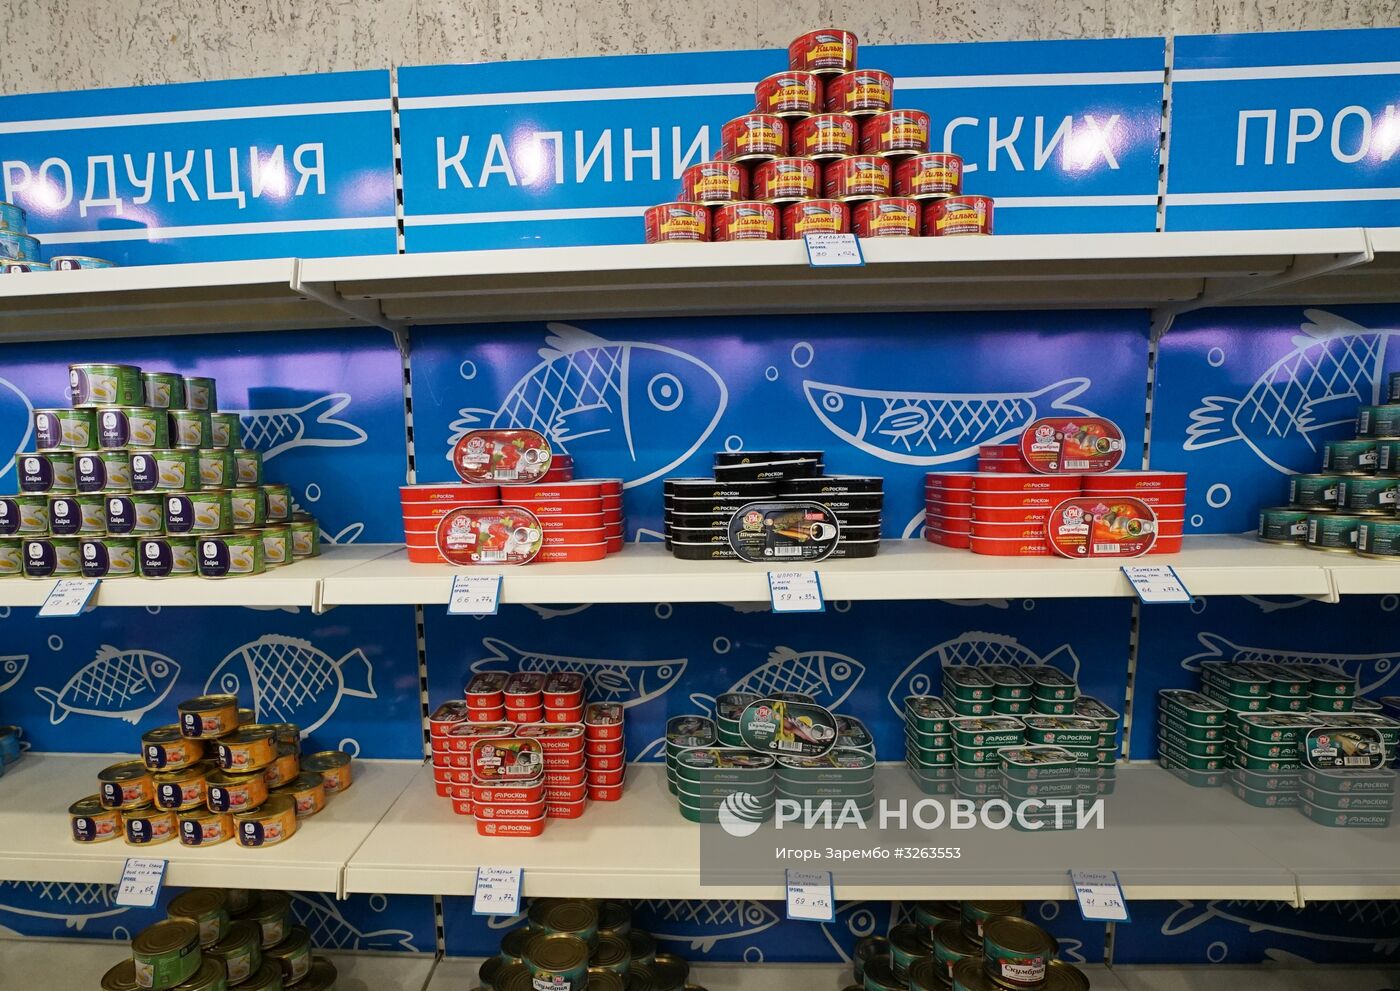 Открытие рыбного магазина "Портовый" на территории Калининградского морского порта